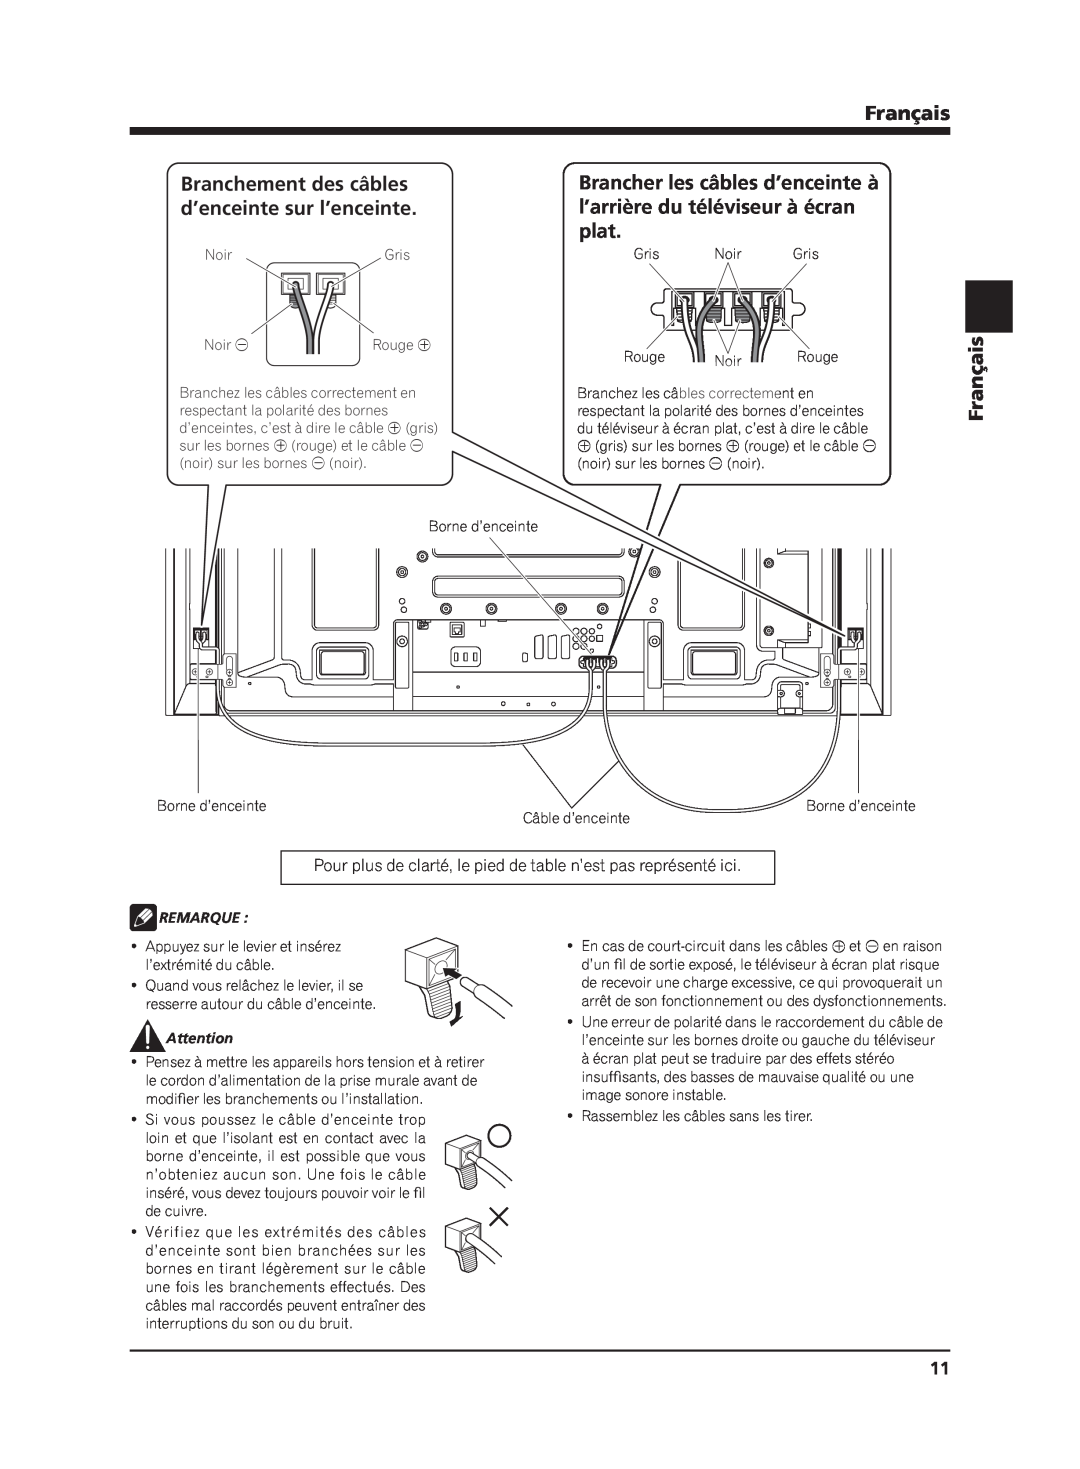 Pioneer PDP-S62 manual Français, Remarque, Rassemblez les câbles sans les tirer 